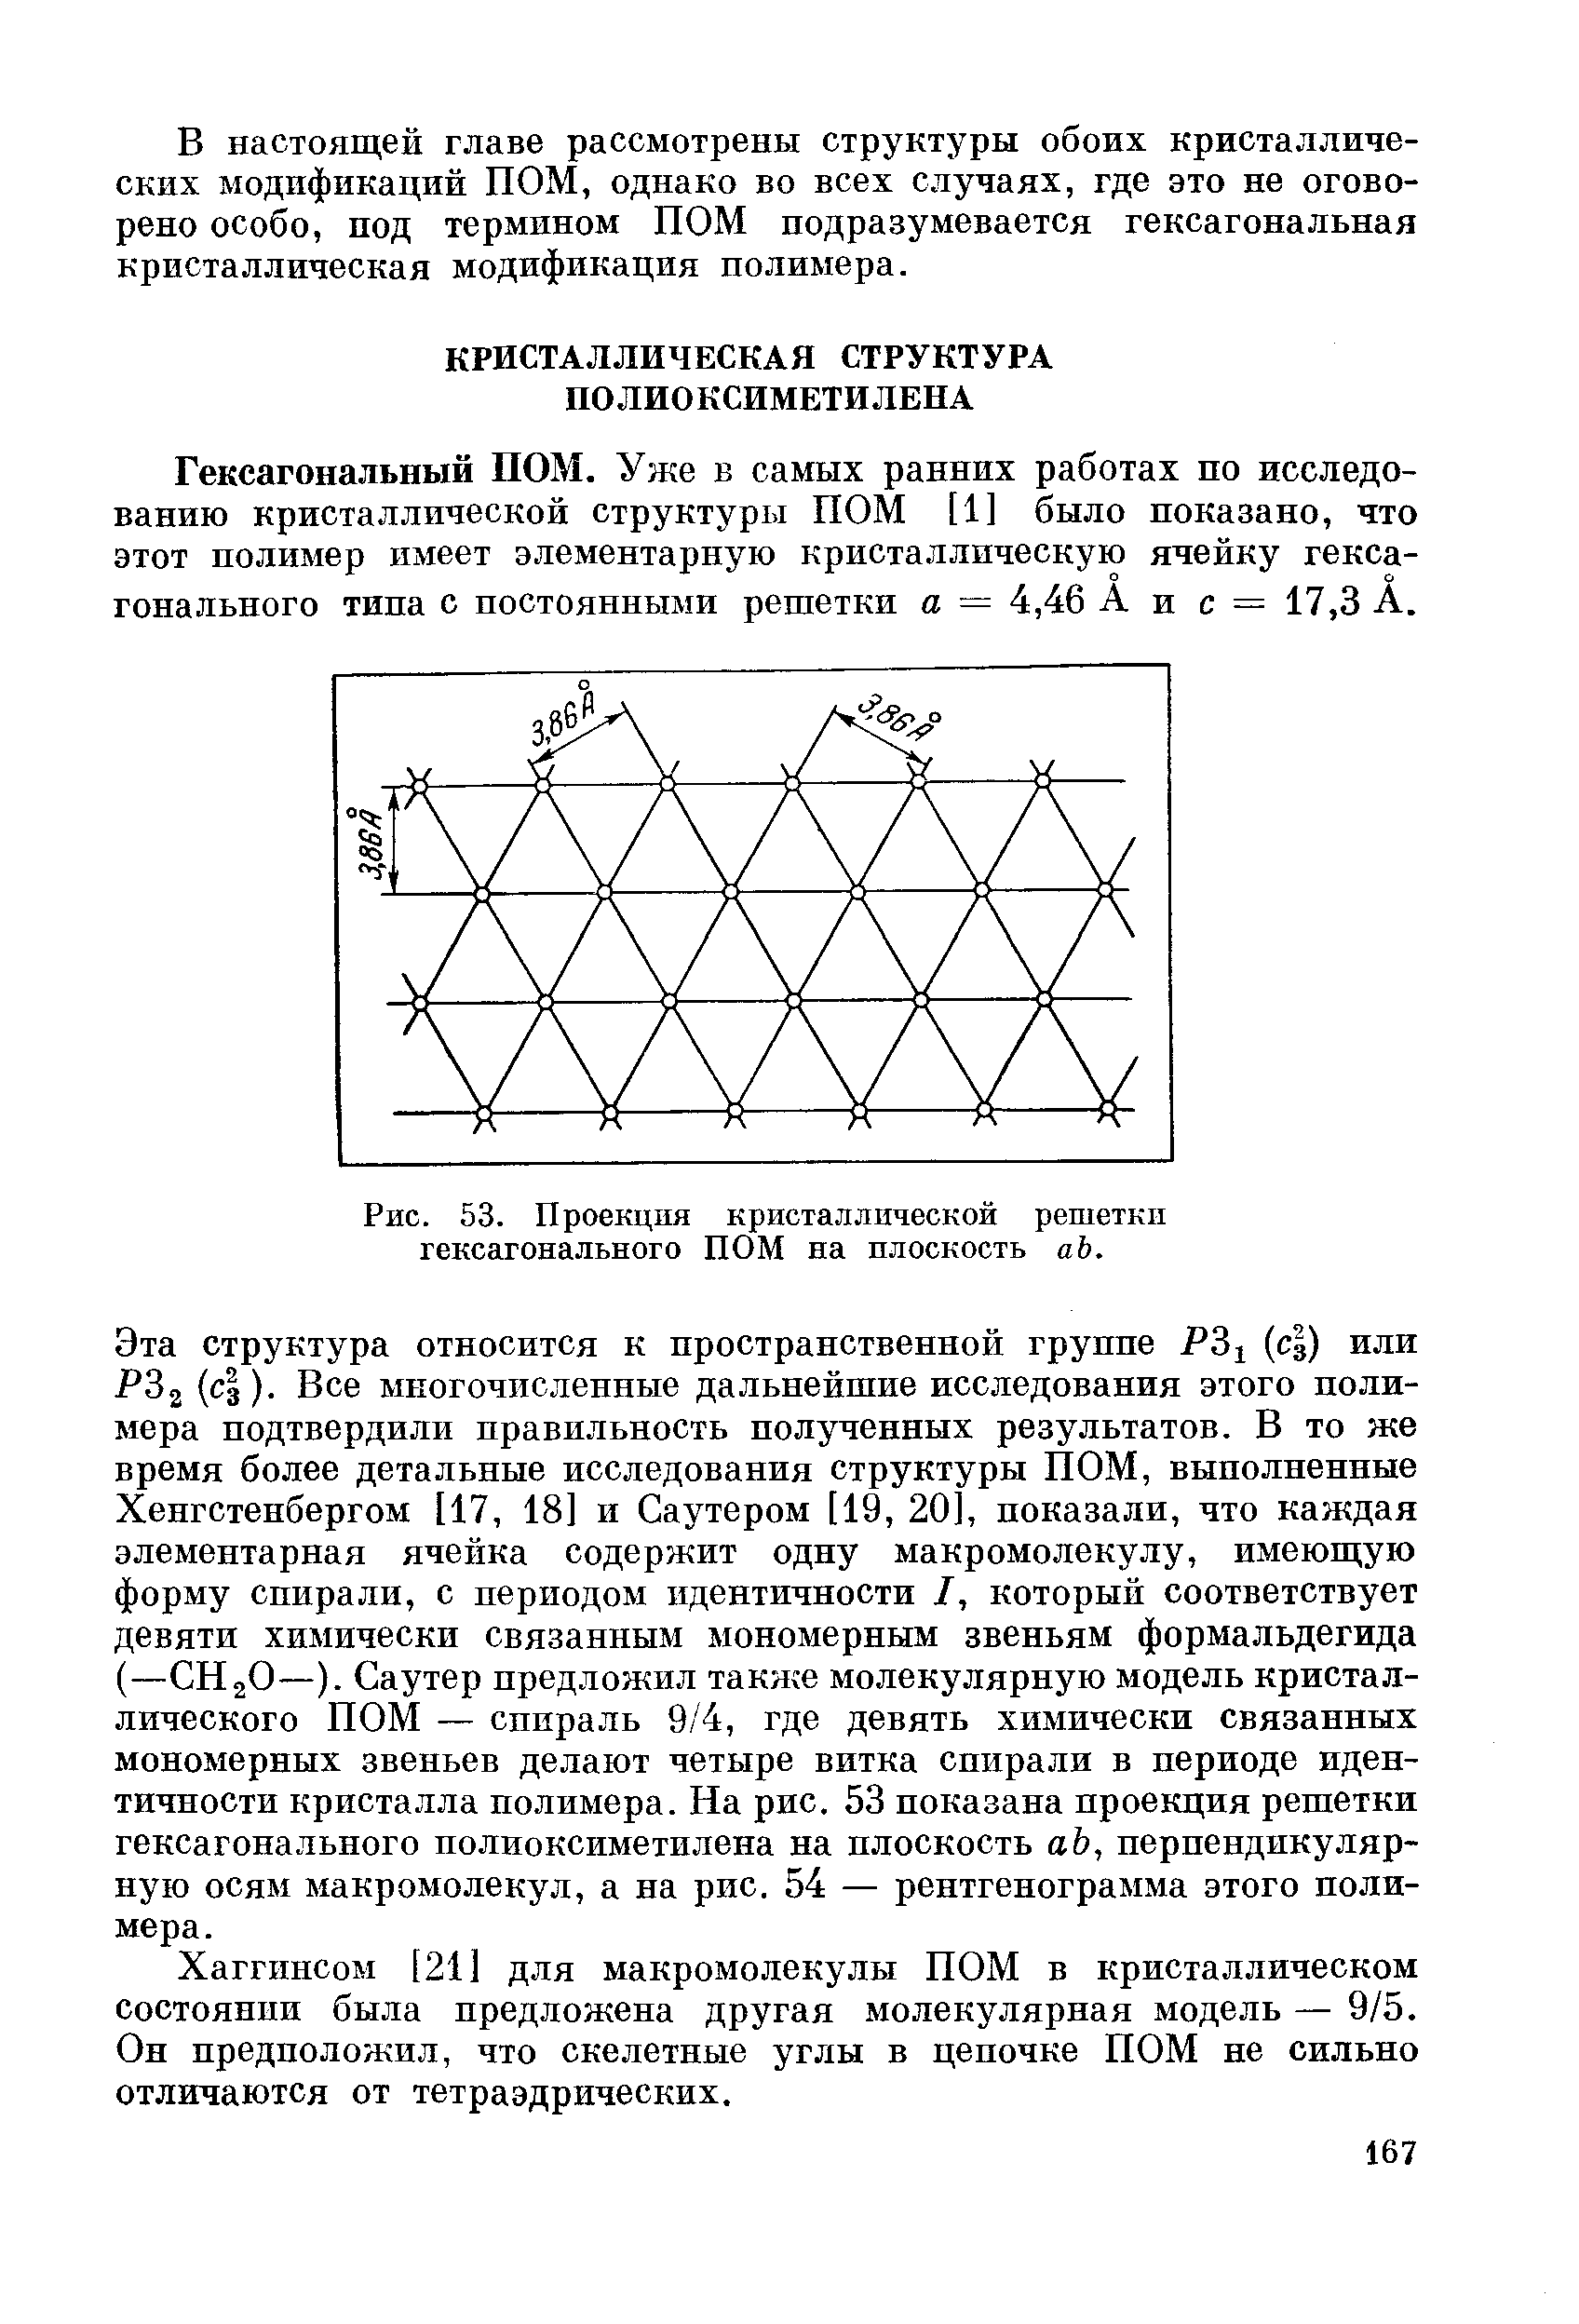 Гексагональный ПОМ. Уже в самых ранних работах по исследованию кристаллической структуры ПОМ [1] было показано, что этот полимер имеет элементарную кристаллическую ячейку гексагонального тина с постоянными решетки а = 4,46 А и с = 17,3 А.